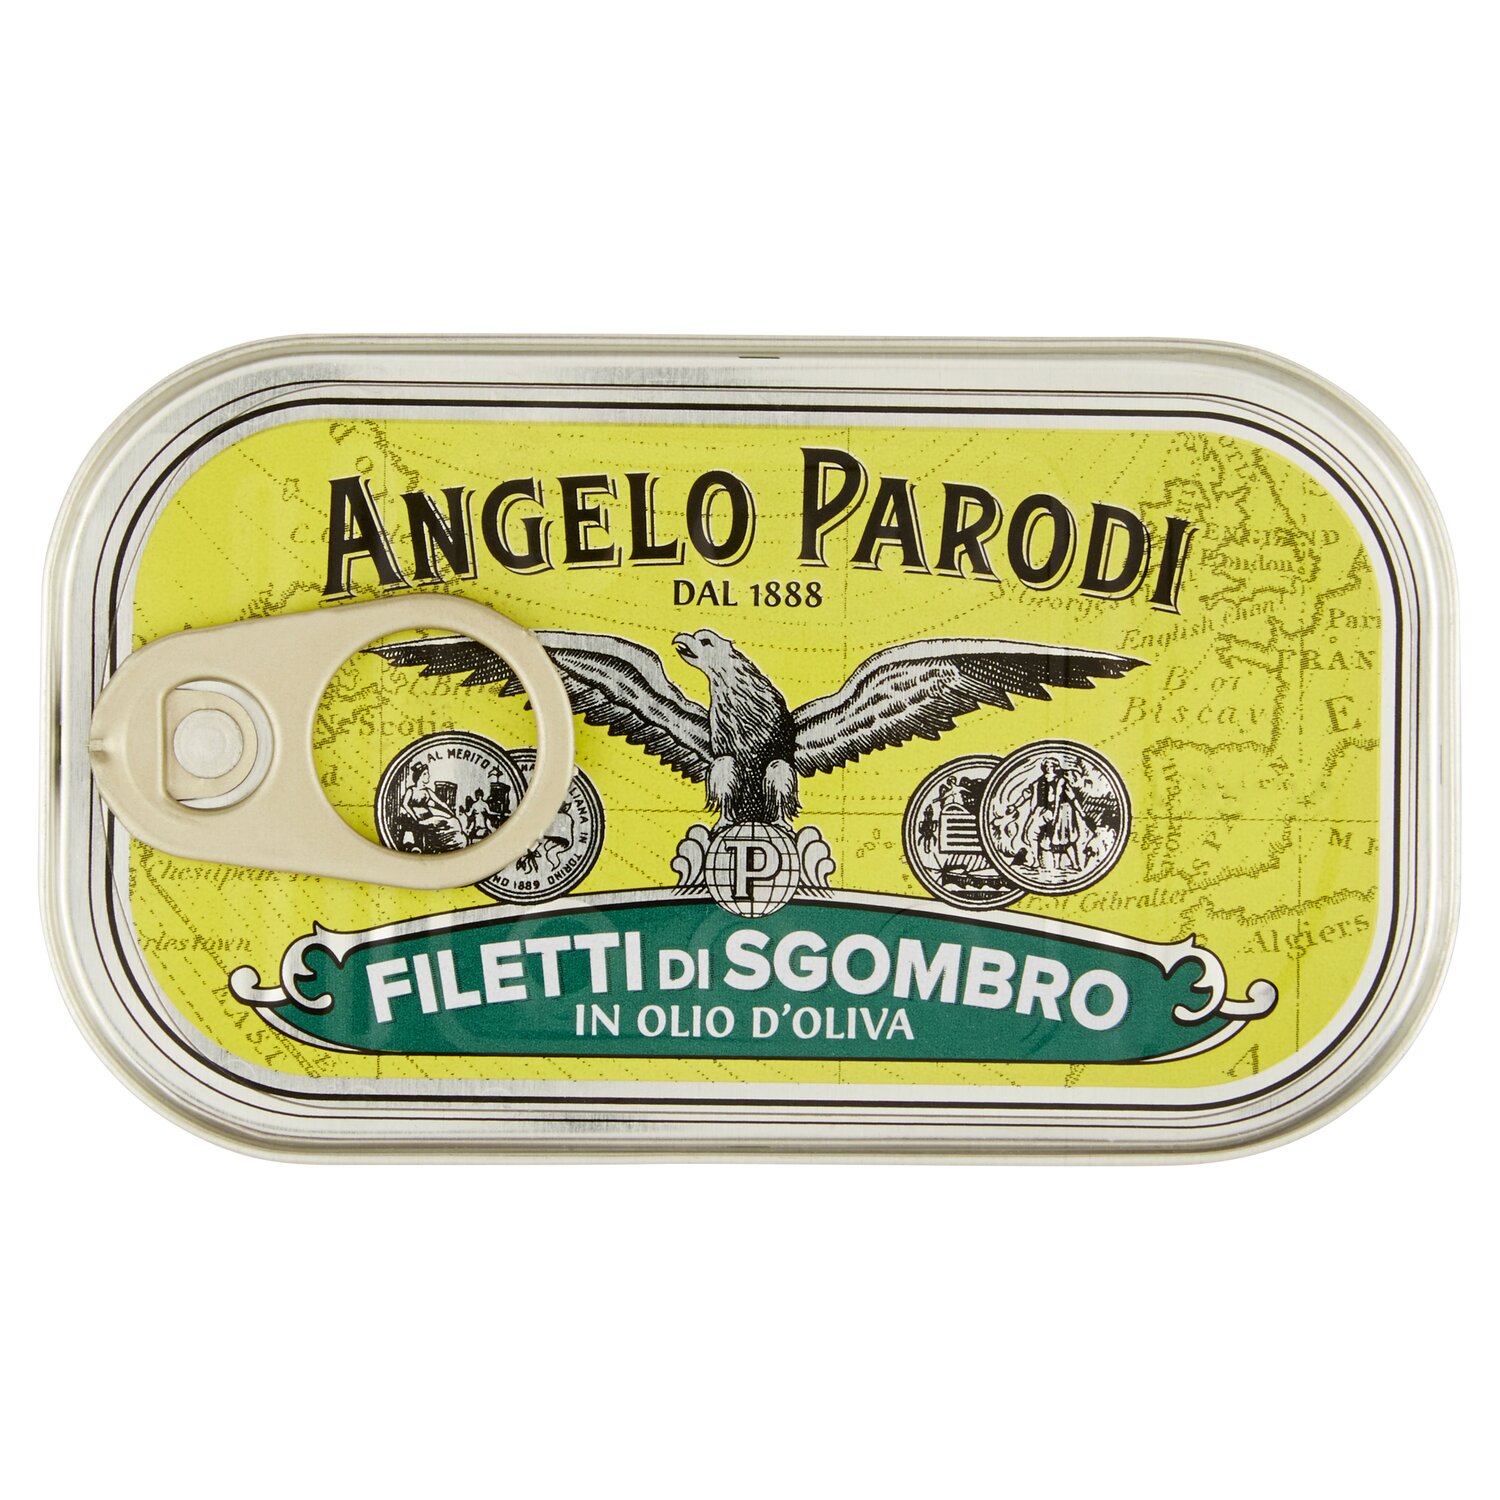 ANGELO PARODI-Prodotti-2-LUNGA CONSERVAZIONE-Tonno-FILETTI DI SGOMBRI OLIO OLIVA GR 125 ANGELO PARODI-0